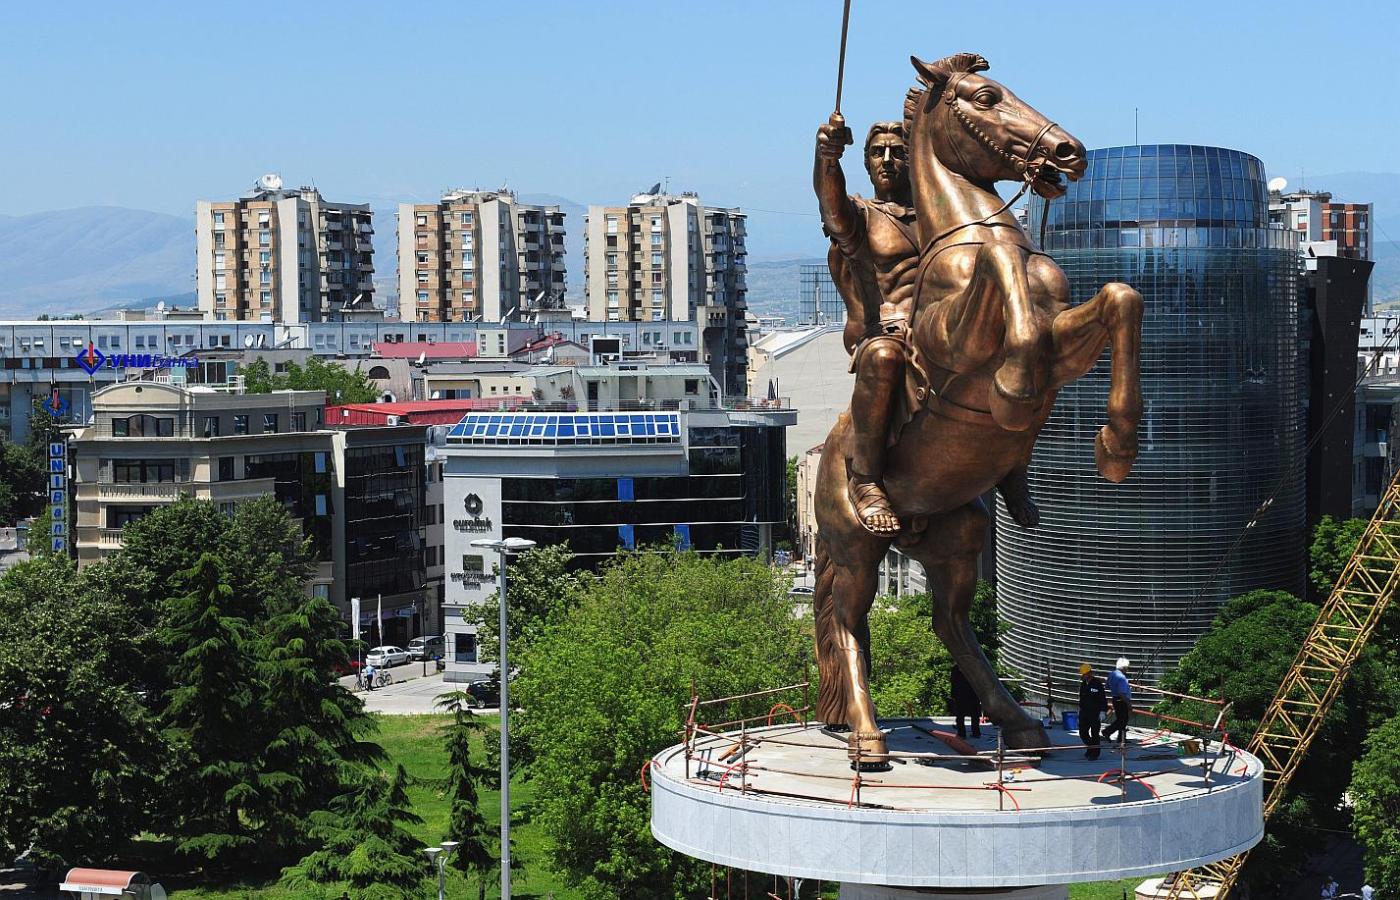 Imponujący posąg Aleksandra Wilkiego na rynku w Skopje.